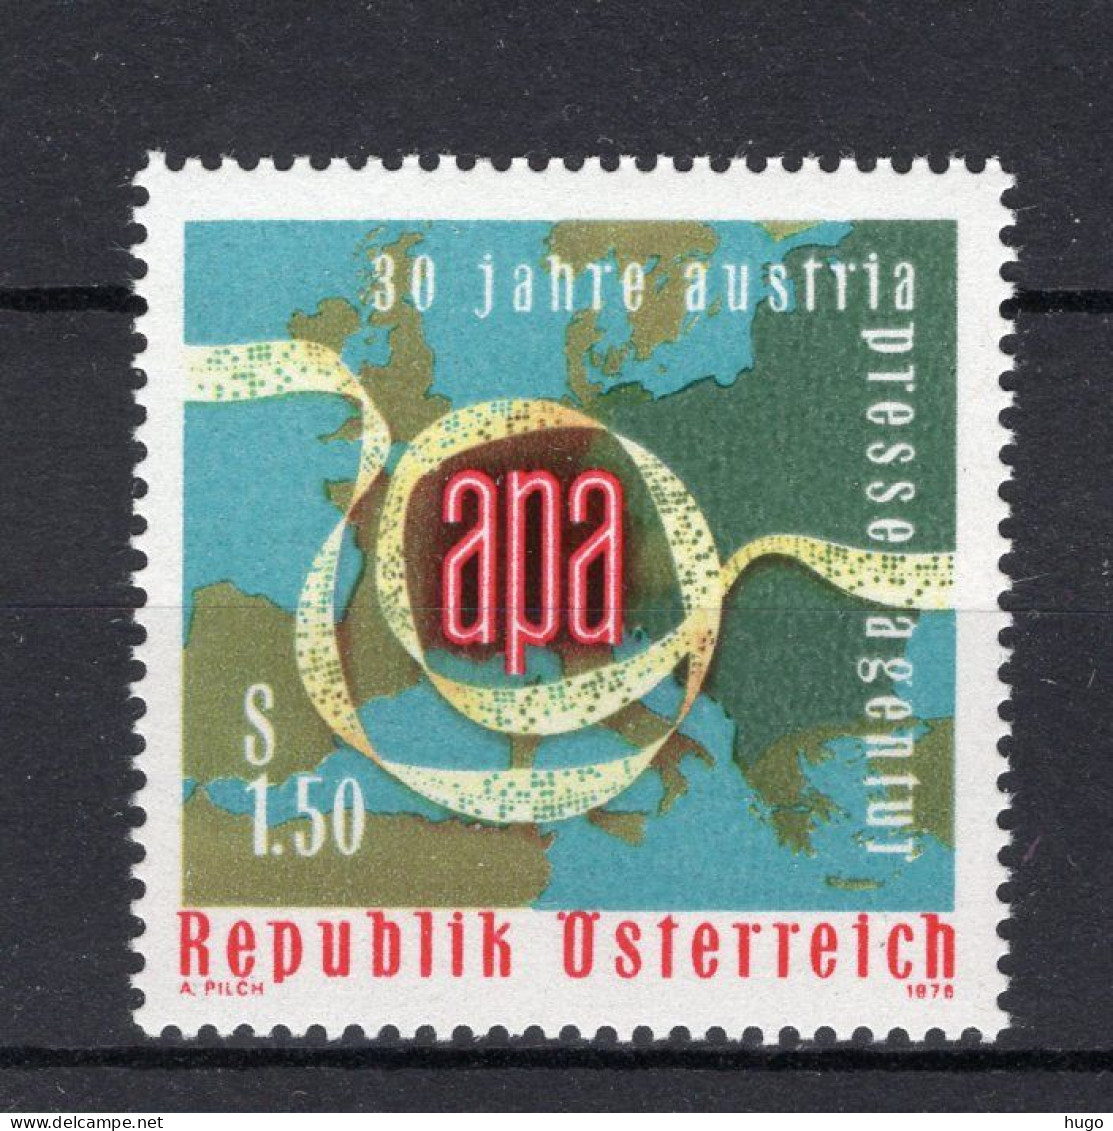 OOSTENRIJK Yt. 1361 MNH 1976 - Unused Stamps